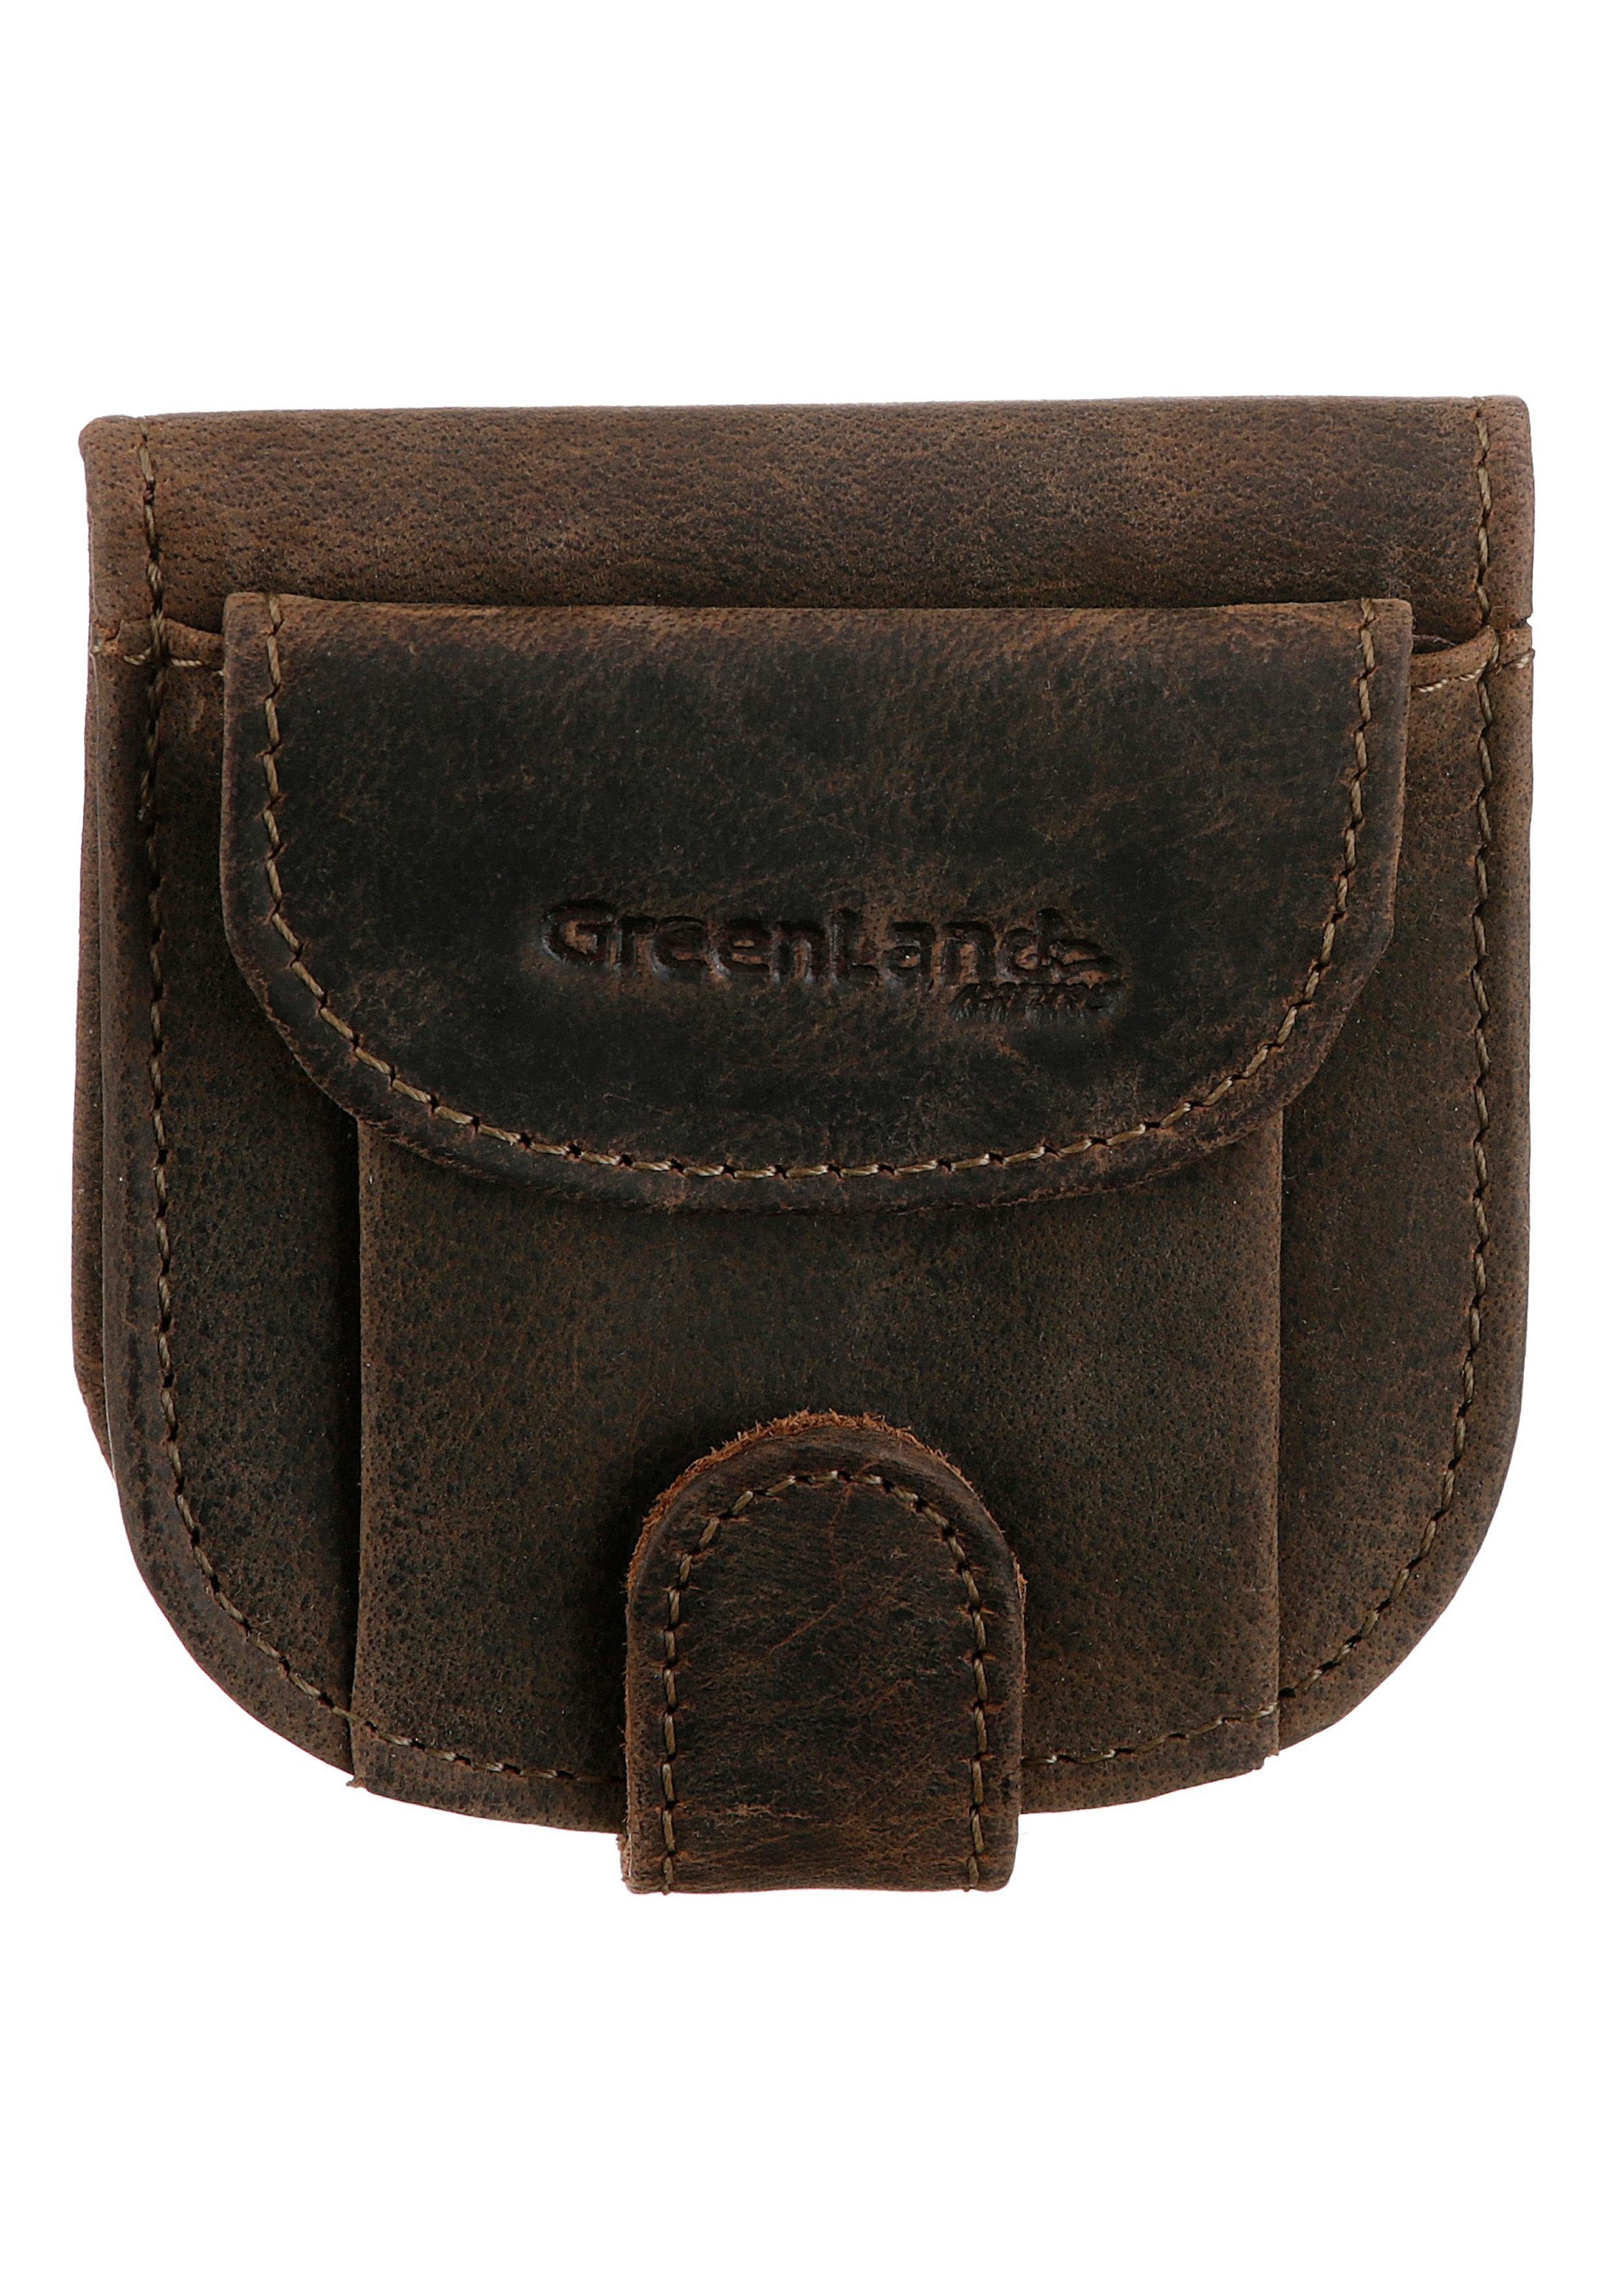 GreenLand Nature Geldbörse »Stone«, aus echtem Leder, im kleinen Format